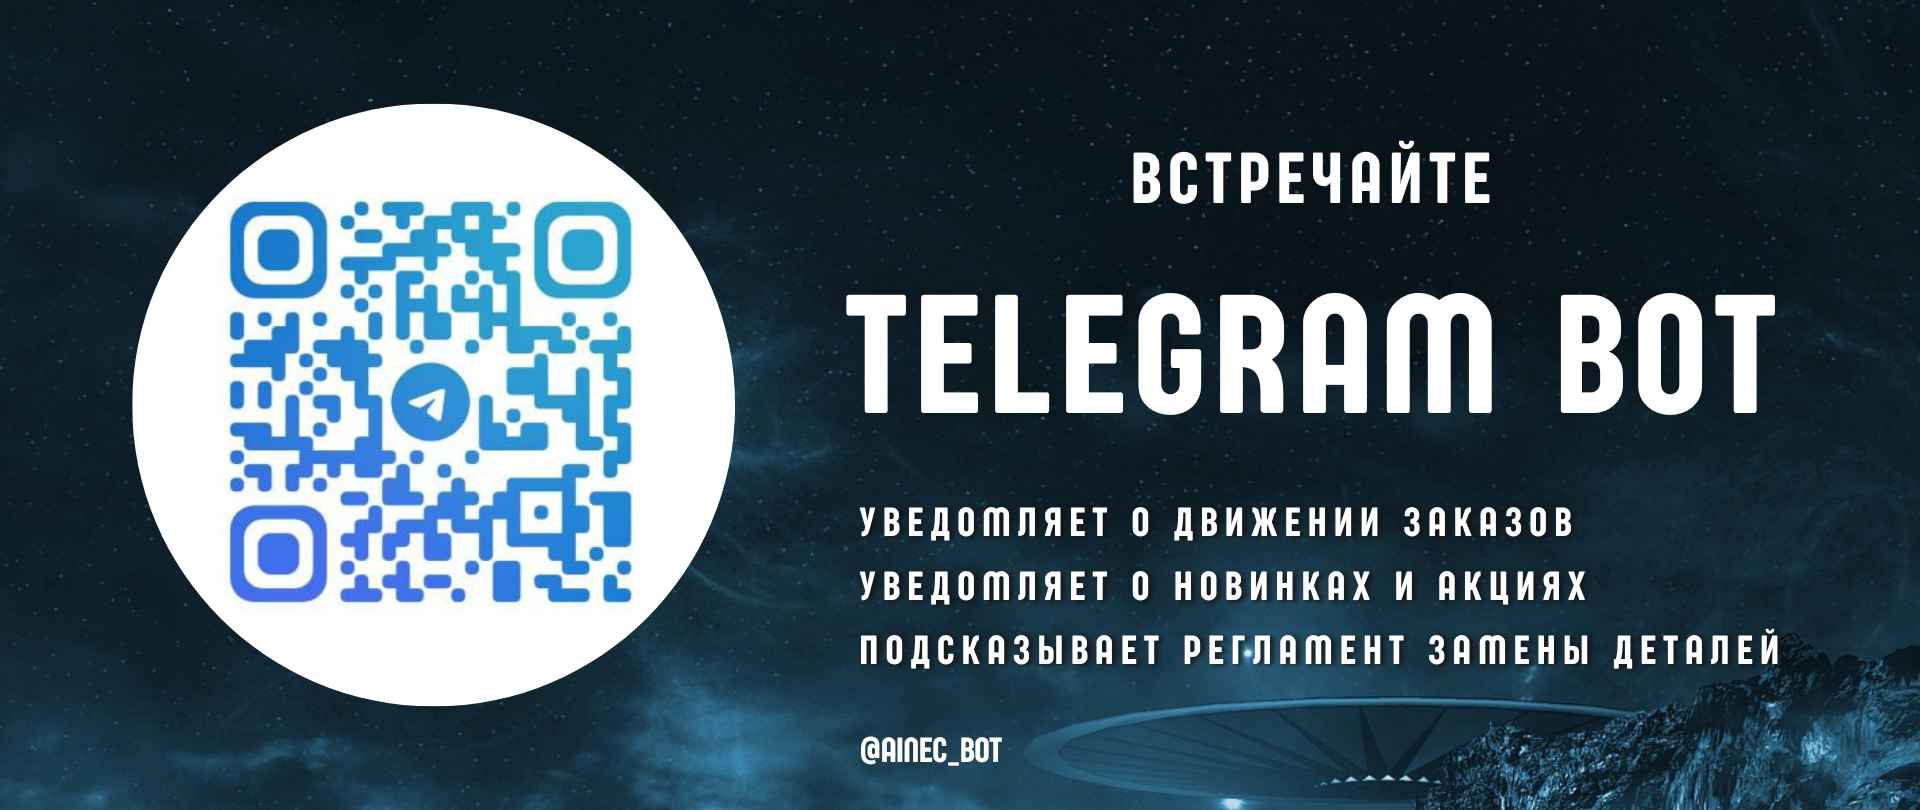 Оповещения о заказах и ТО через Телеграм бота: АВТОиностранец - запчасти для иномарок, Кострома